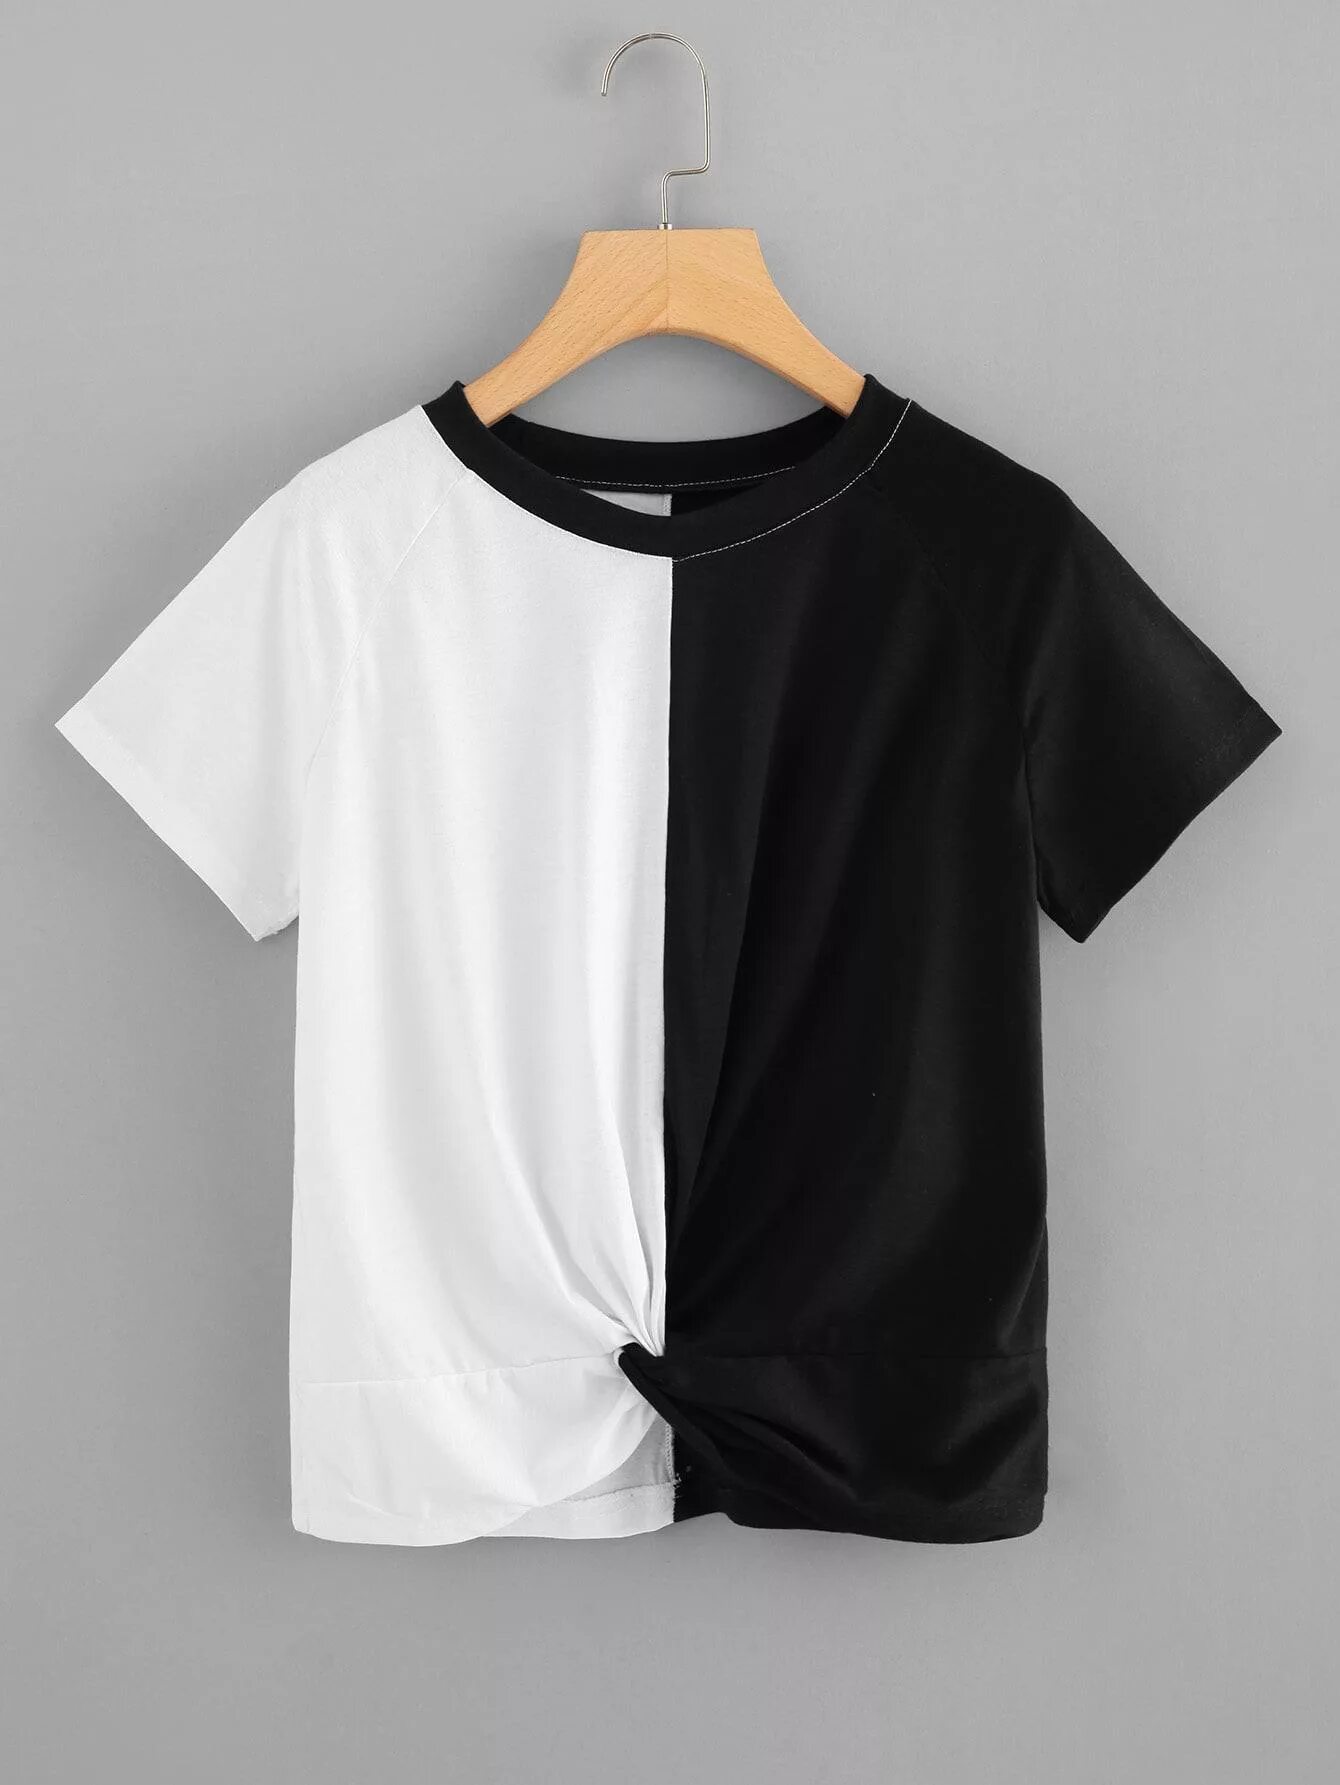 Черно белая футболка. Белая и черная футболка. Черно белая футболка пополам. Футболка наполовину черная наполовину белая.